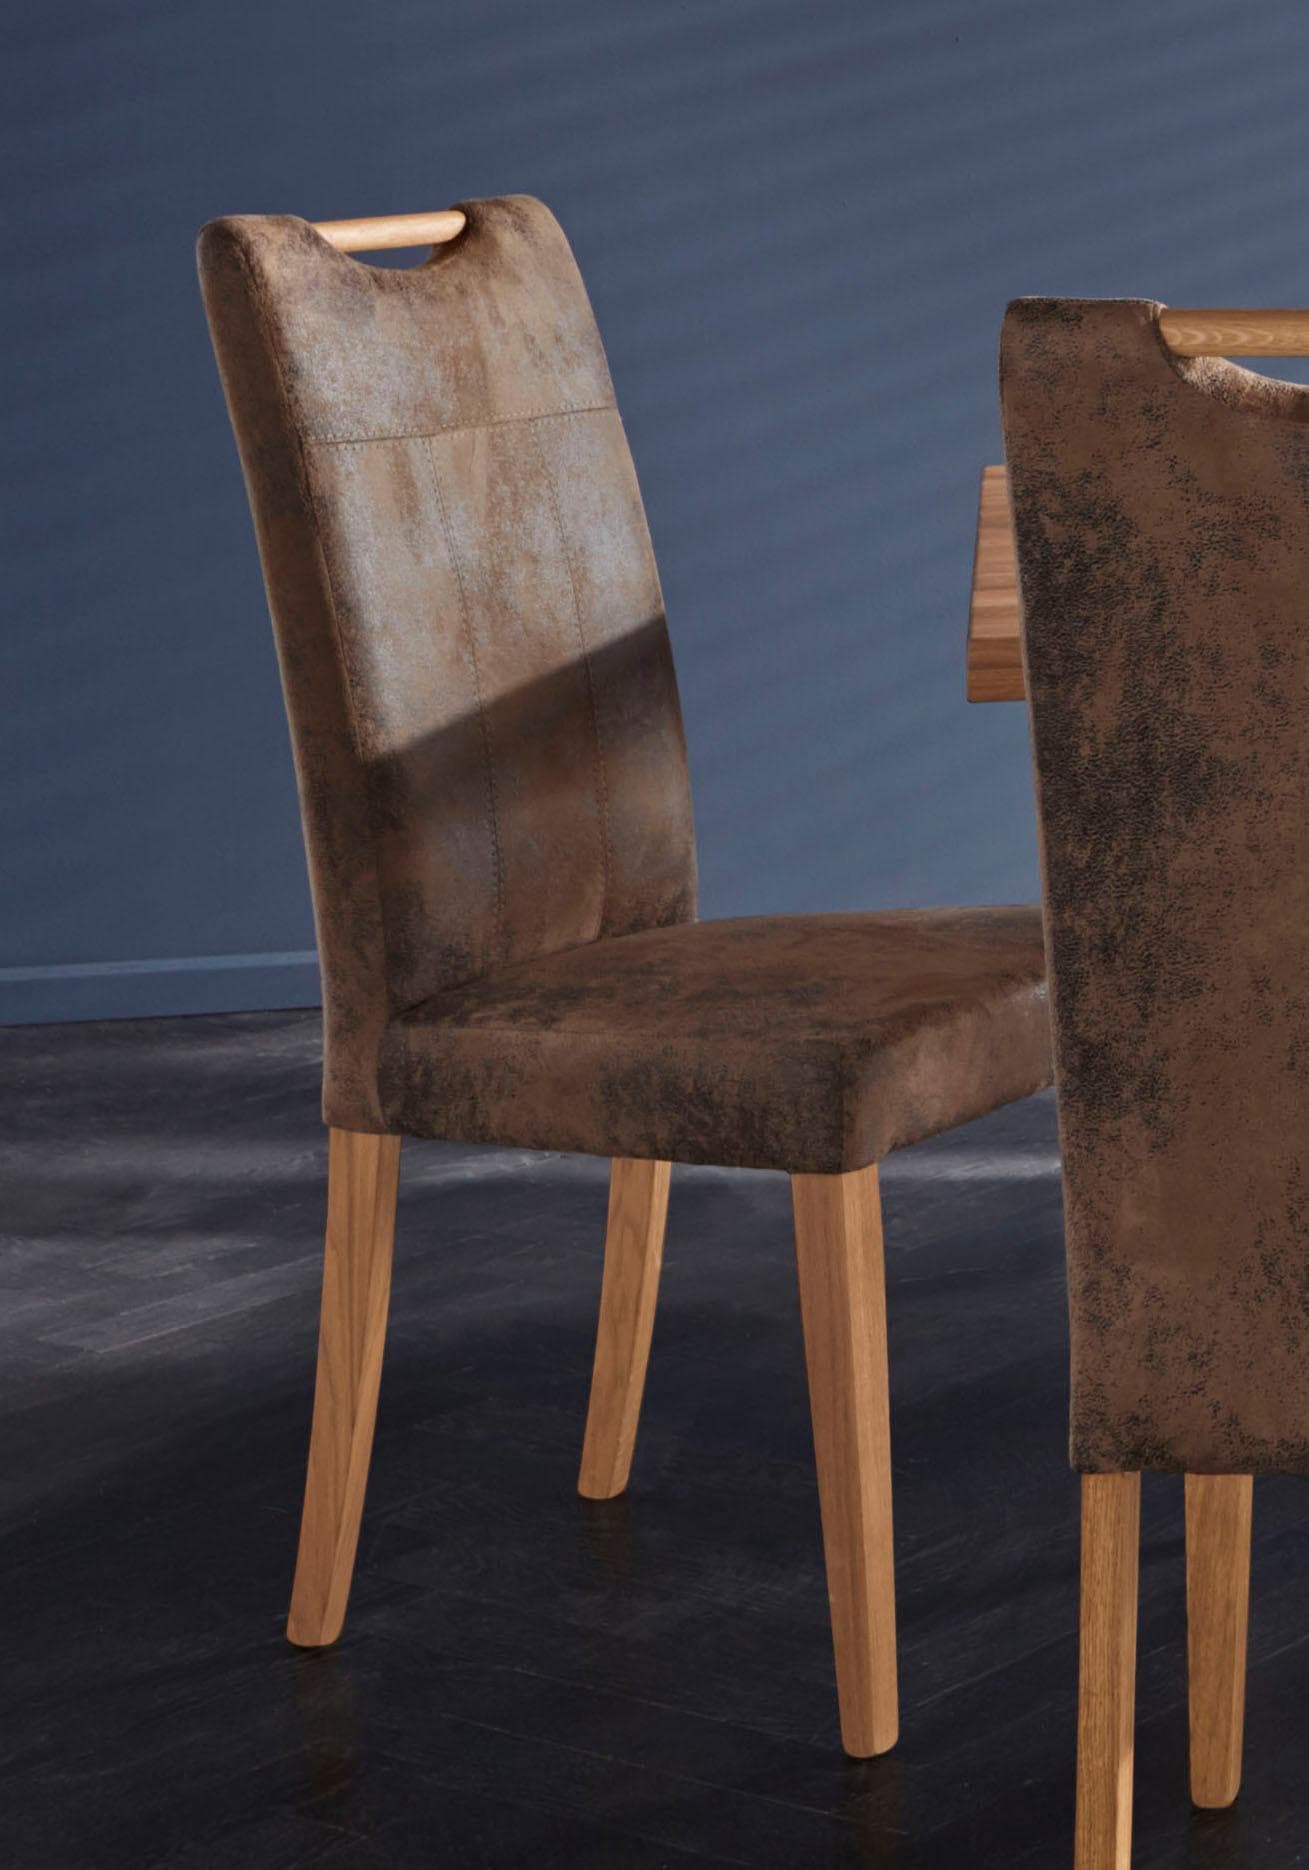 kaufen 4-Fuss-Stühle online bei Ackermann